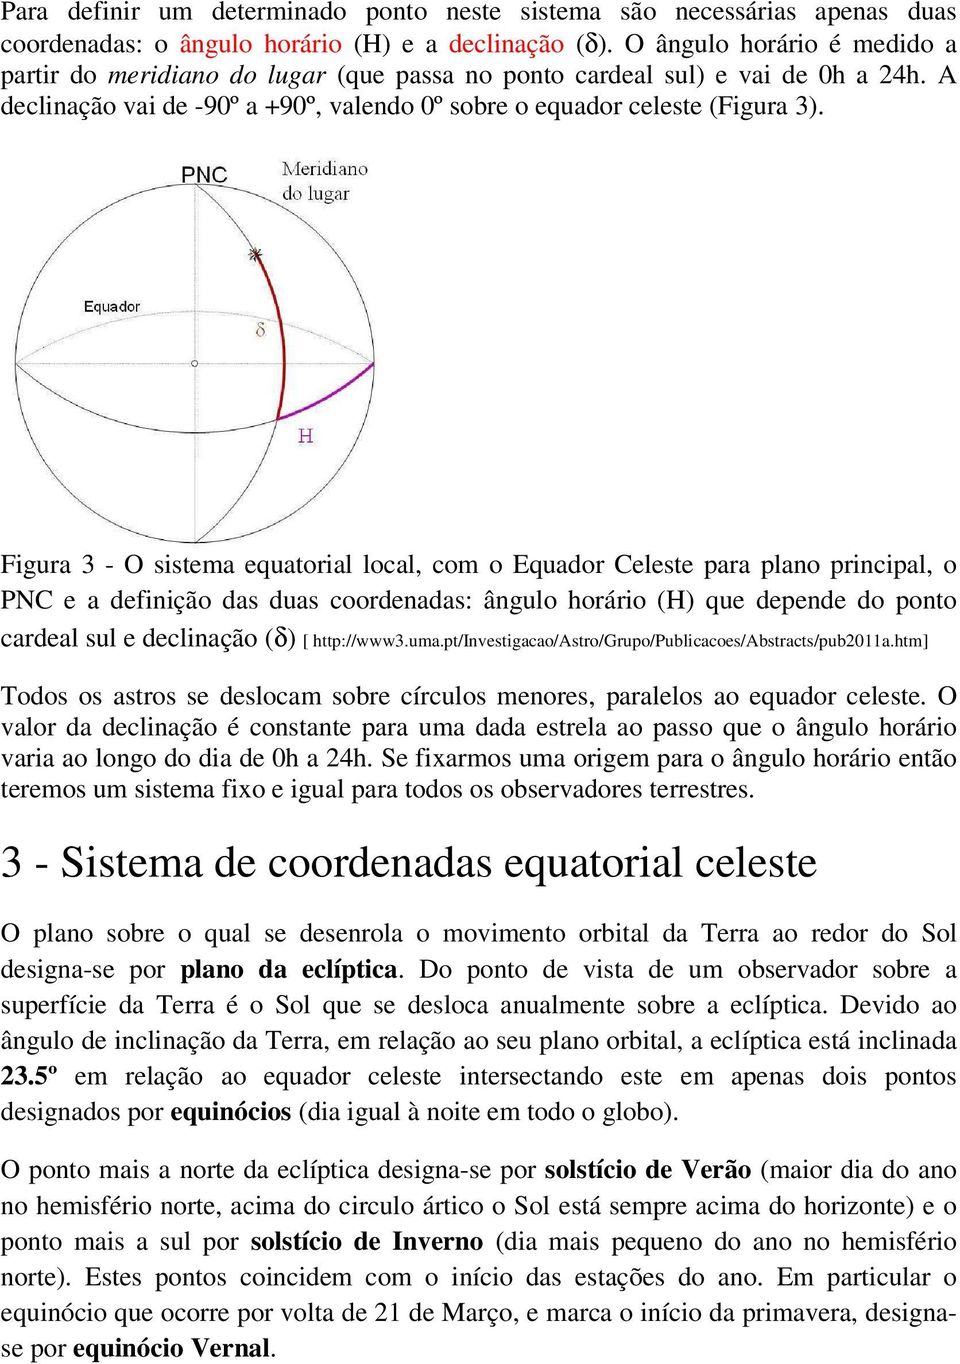 Figura 3 - O sistema equatorial local, com o Equador Celeste para plano principal, o PNC e a definição das duas coordenadas: ângulo horário (H) que depende do ponto cardeal sul e declinação (δ) [